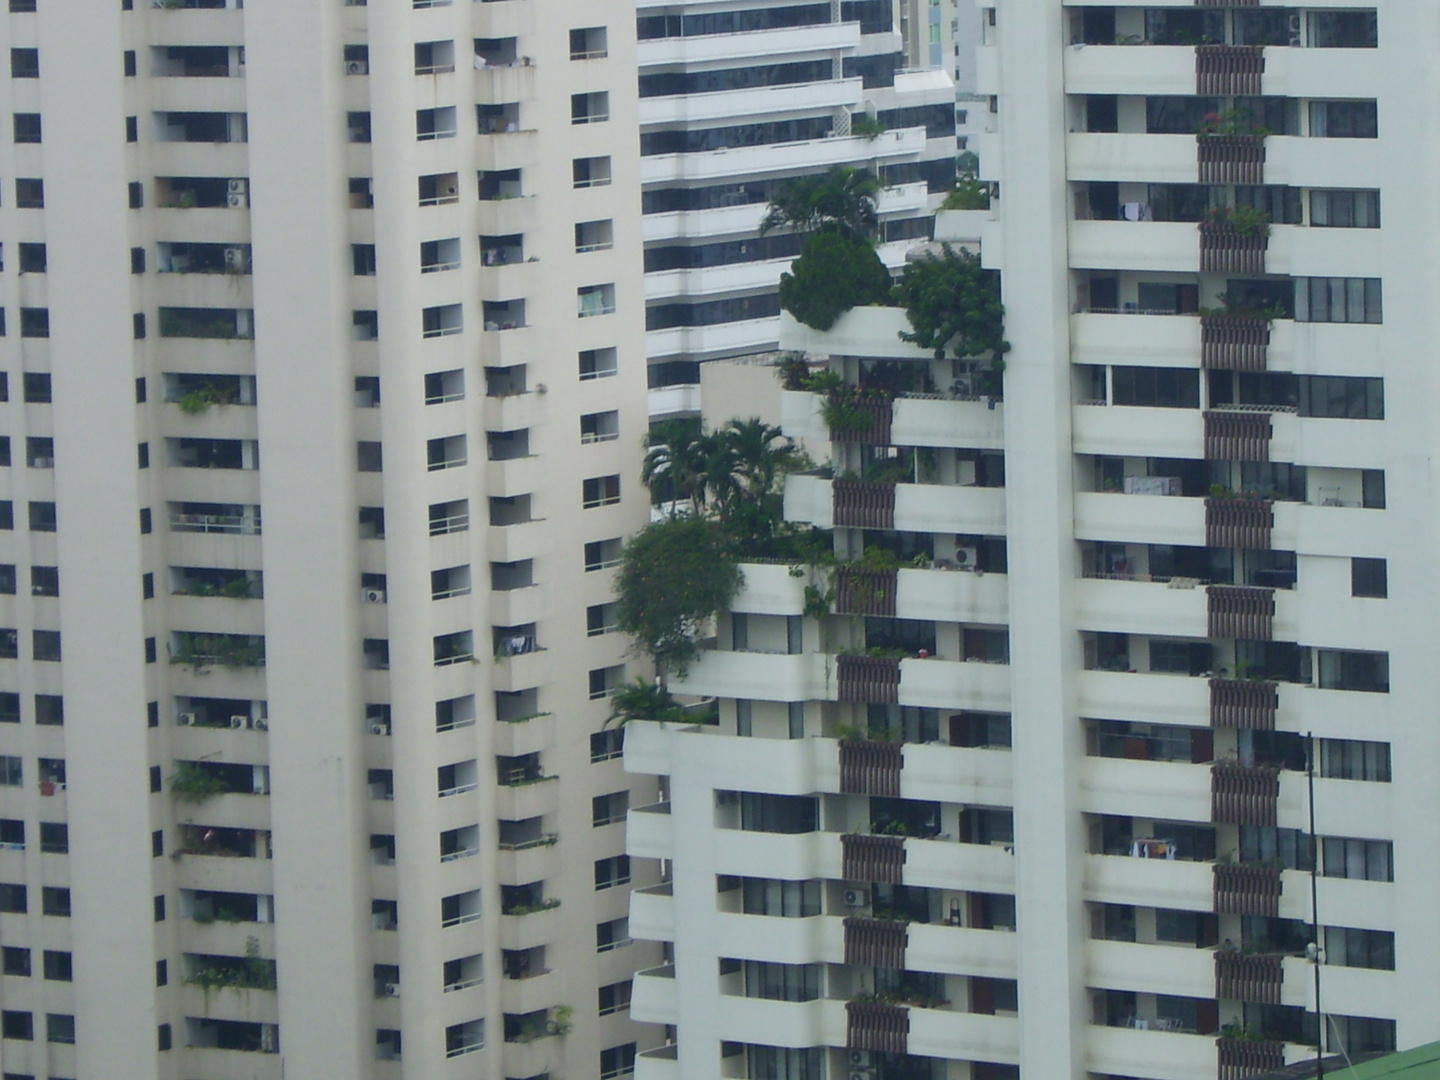 Balkonbepflanzung